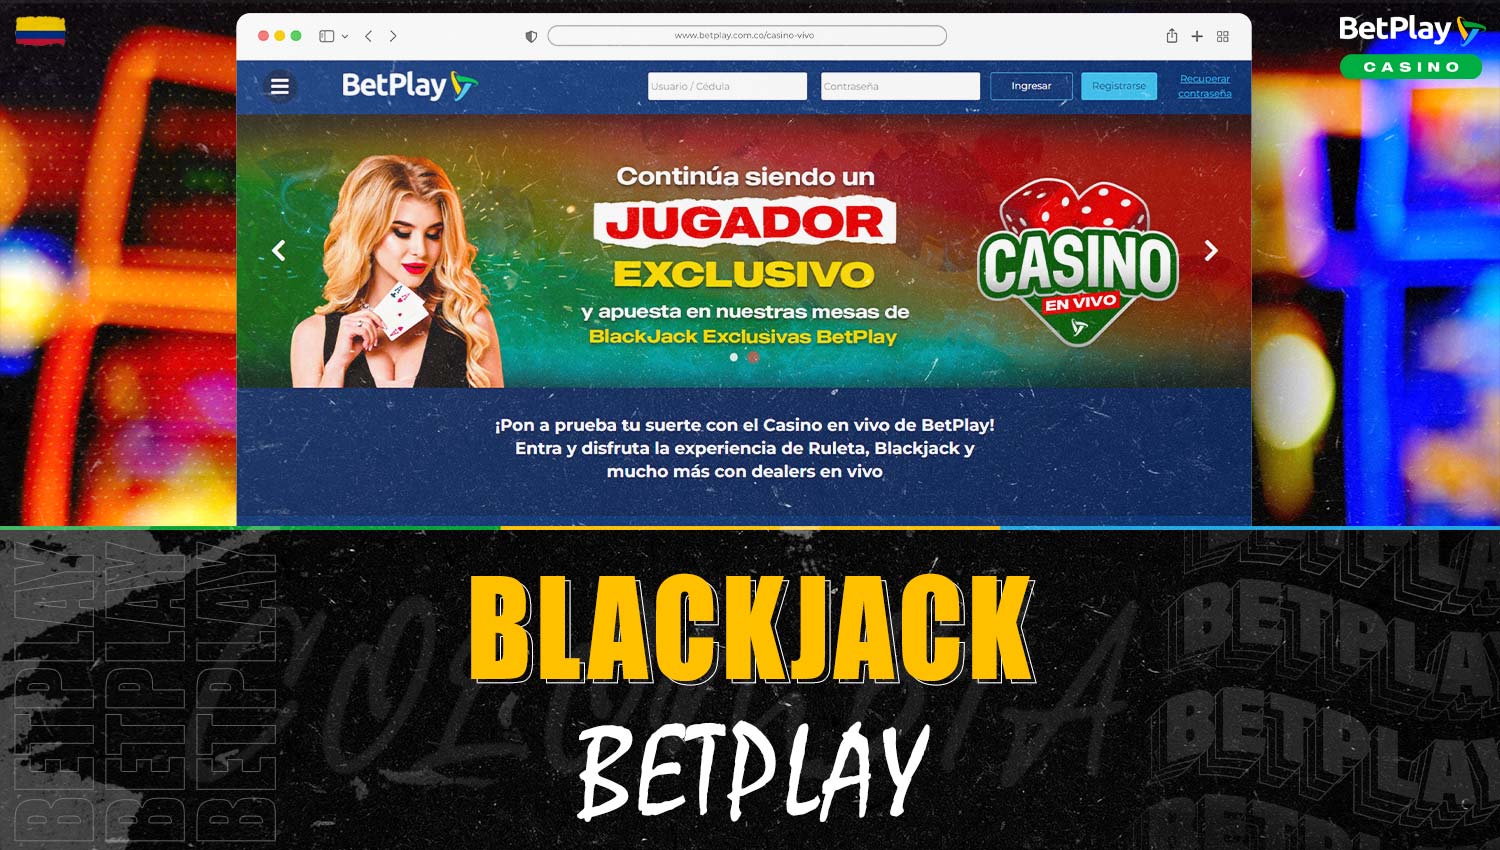 Información detallada sobre "Blackjack" en la plataforma Betplay Colombia